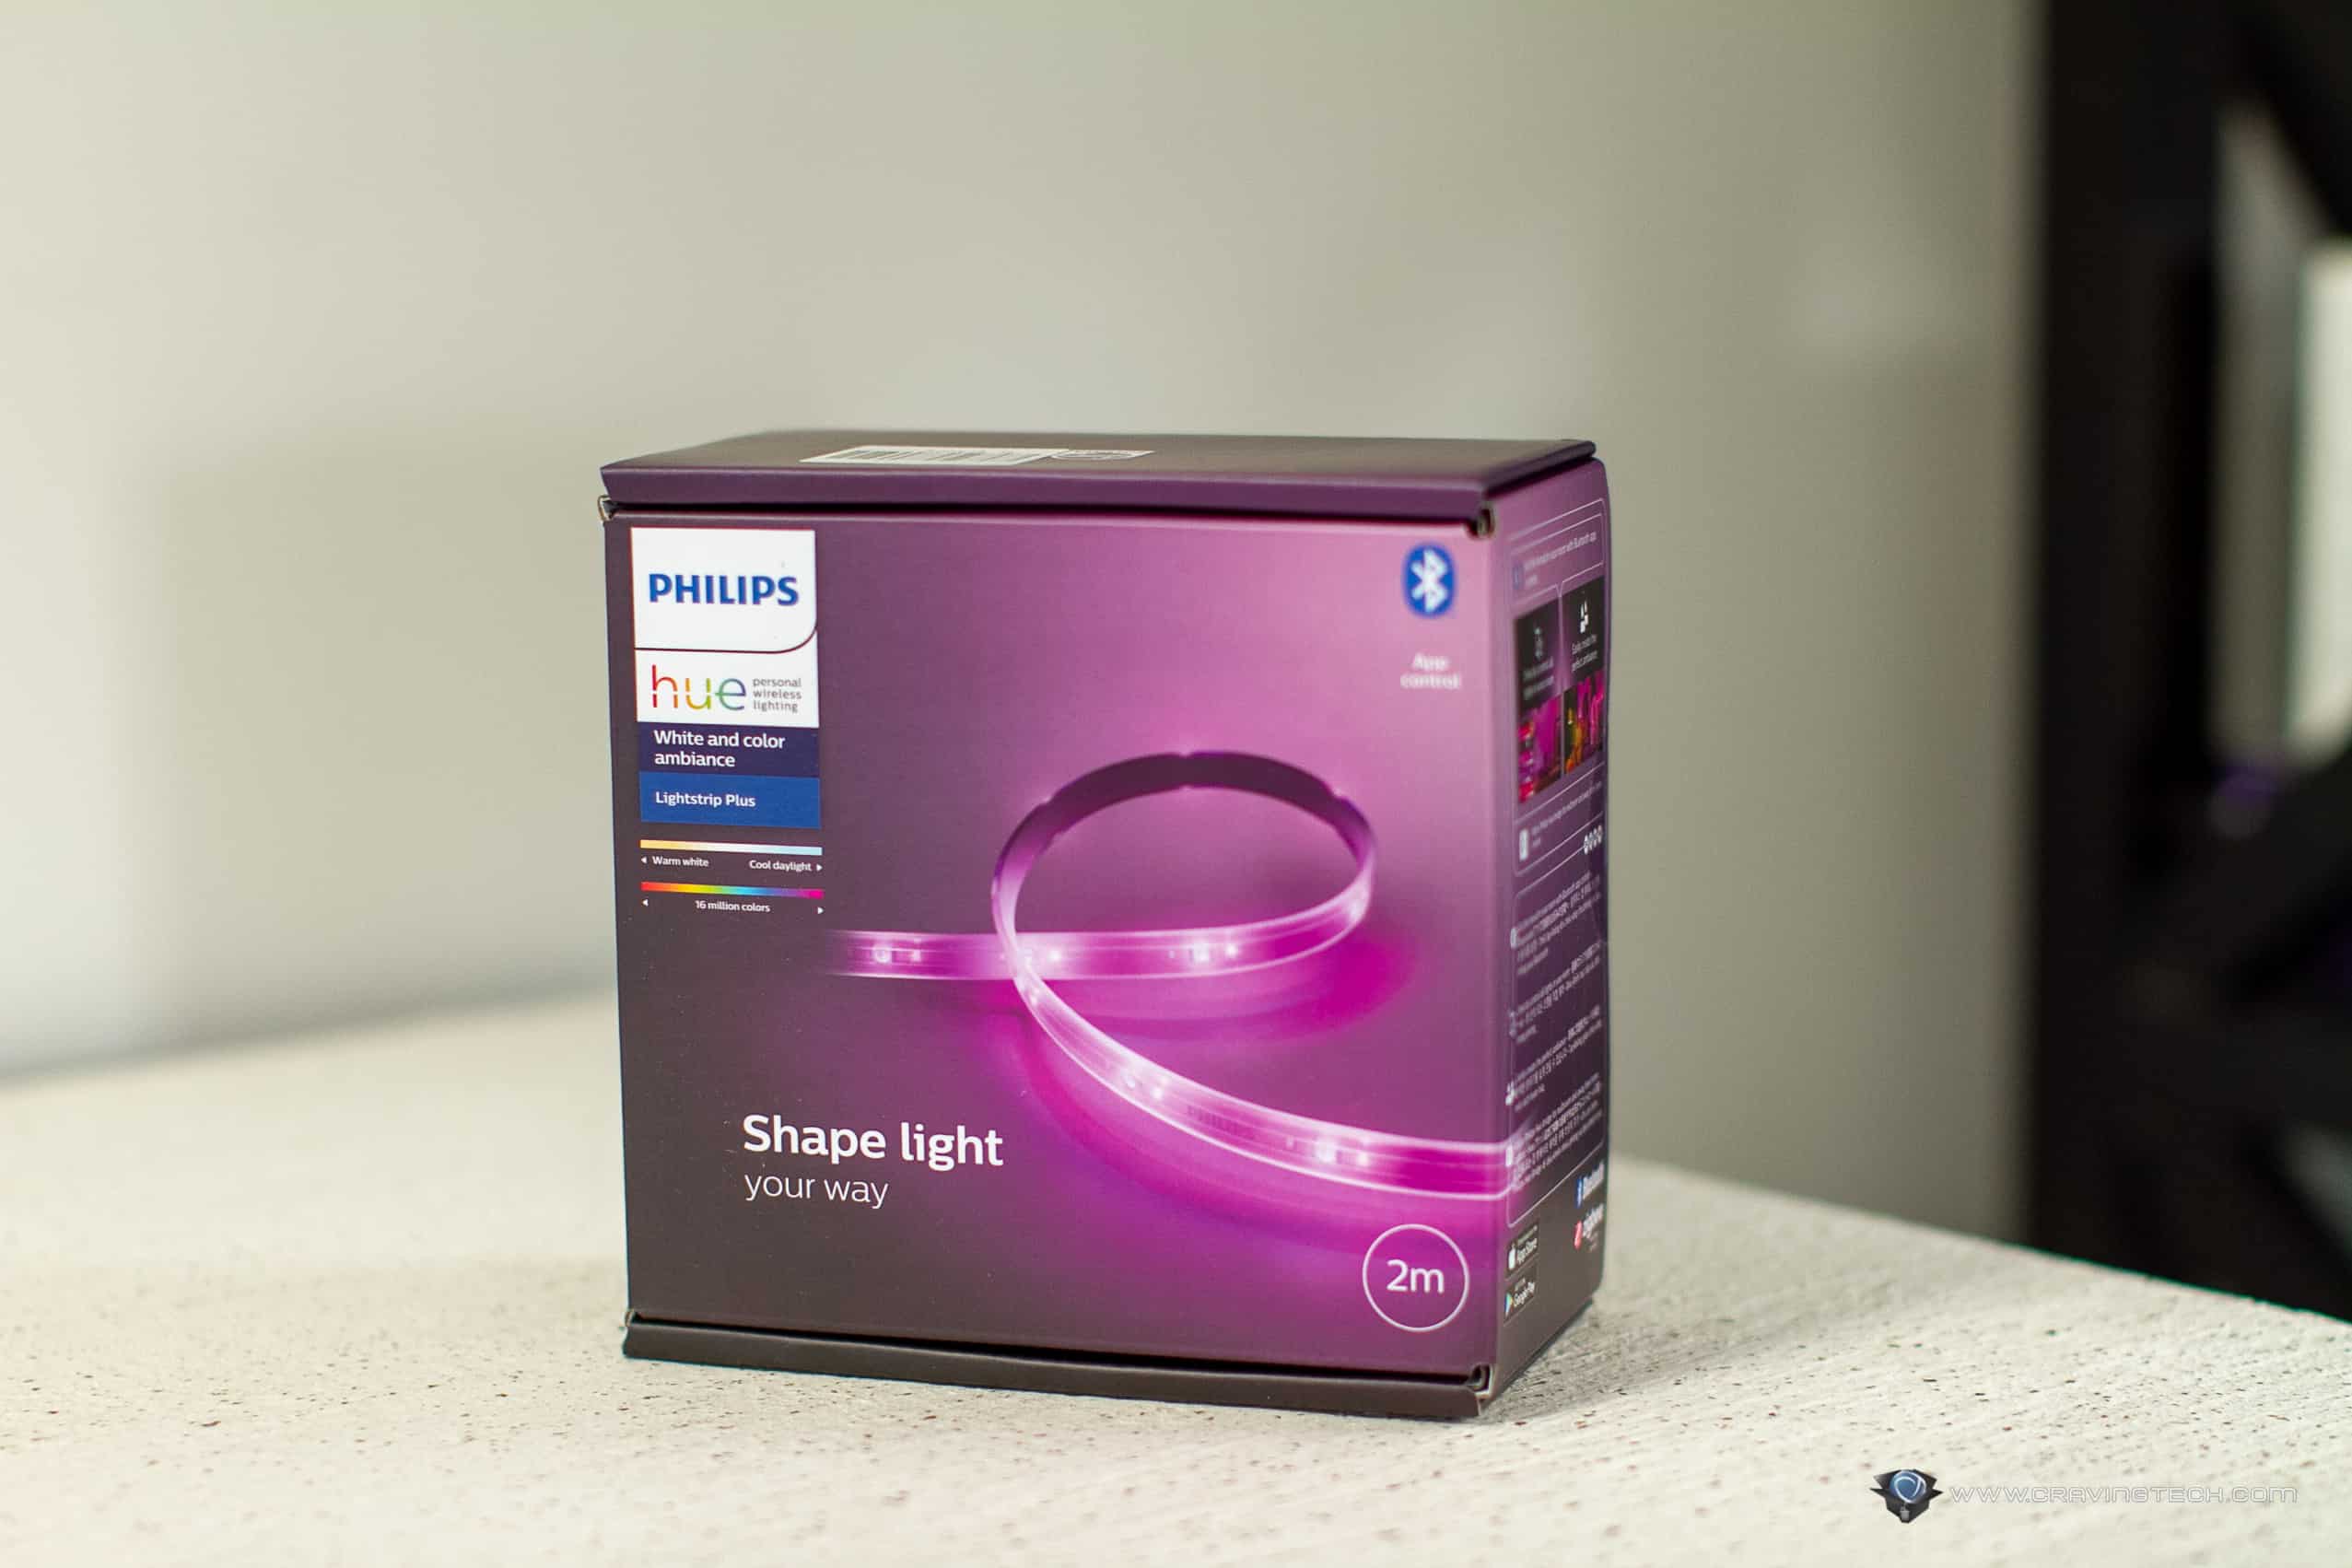 Philips Hue Lightstrip V3 VS V4 Installation and Review 